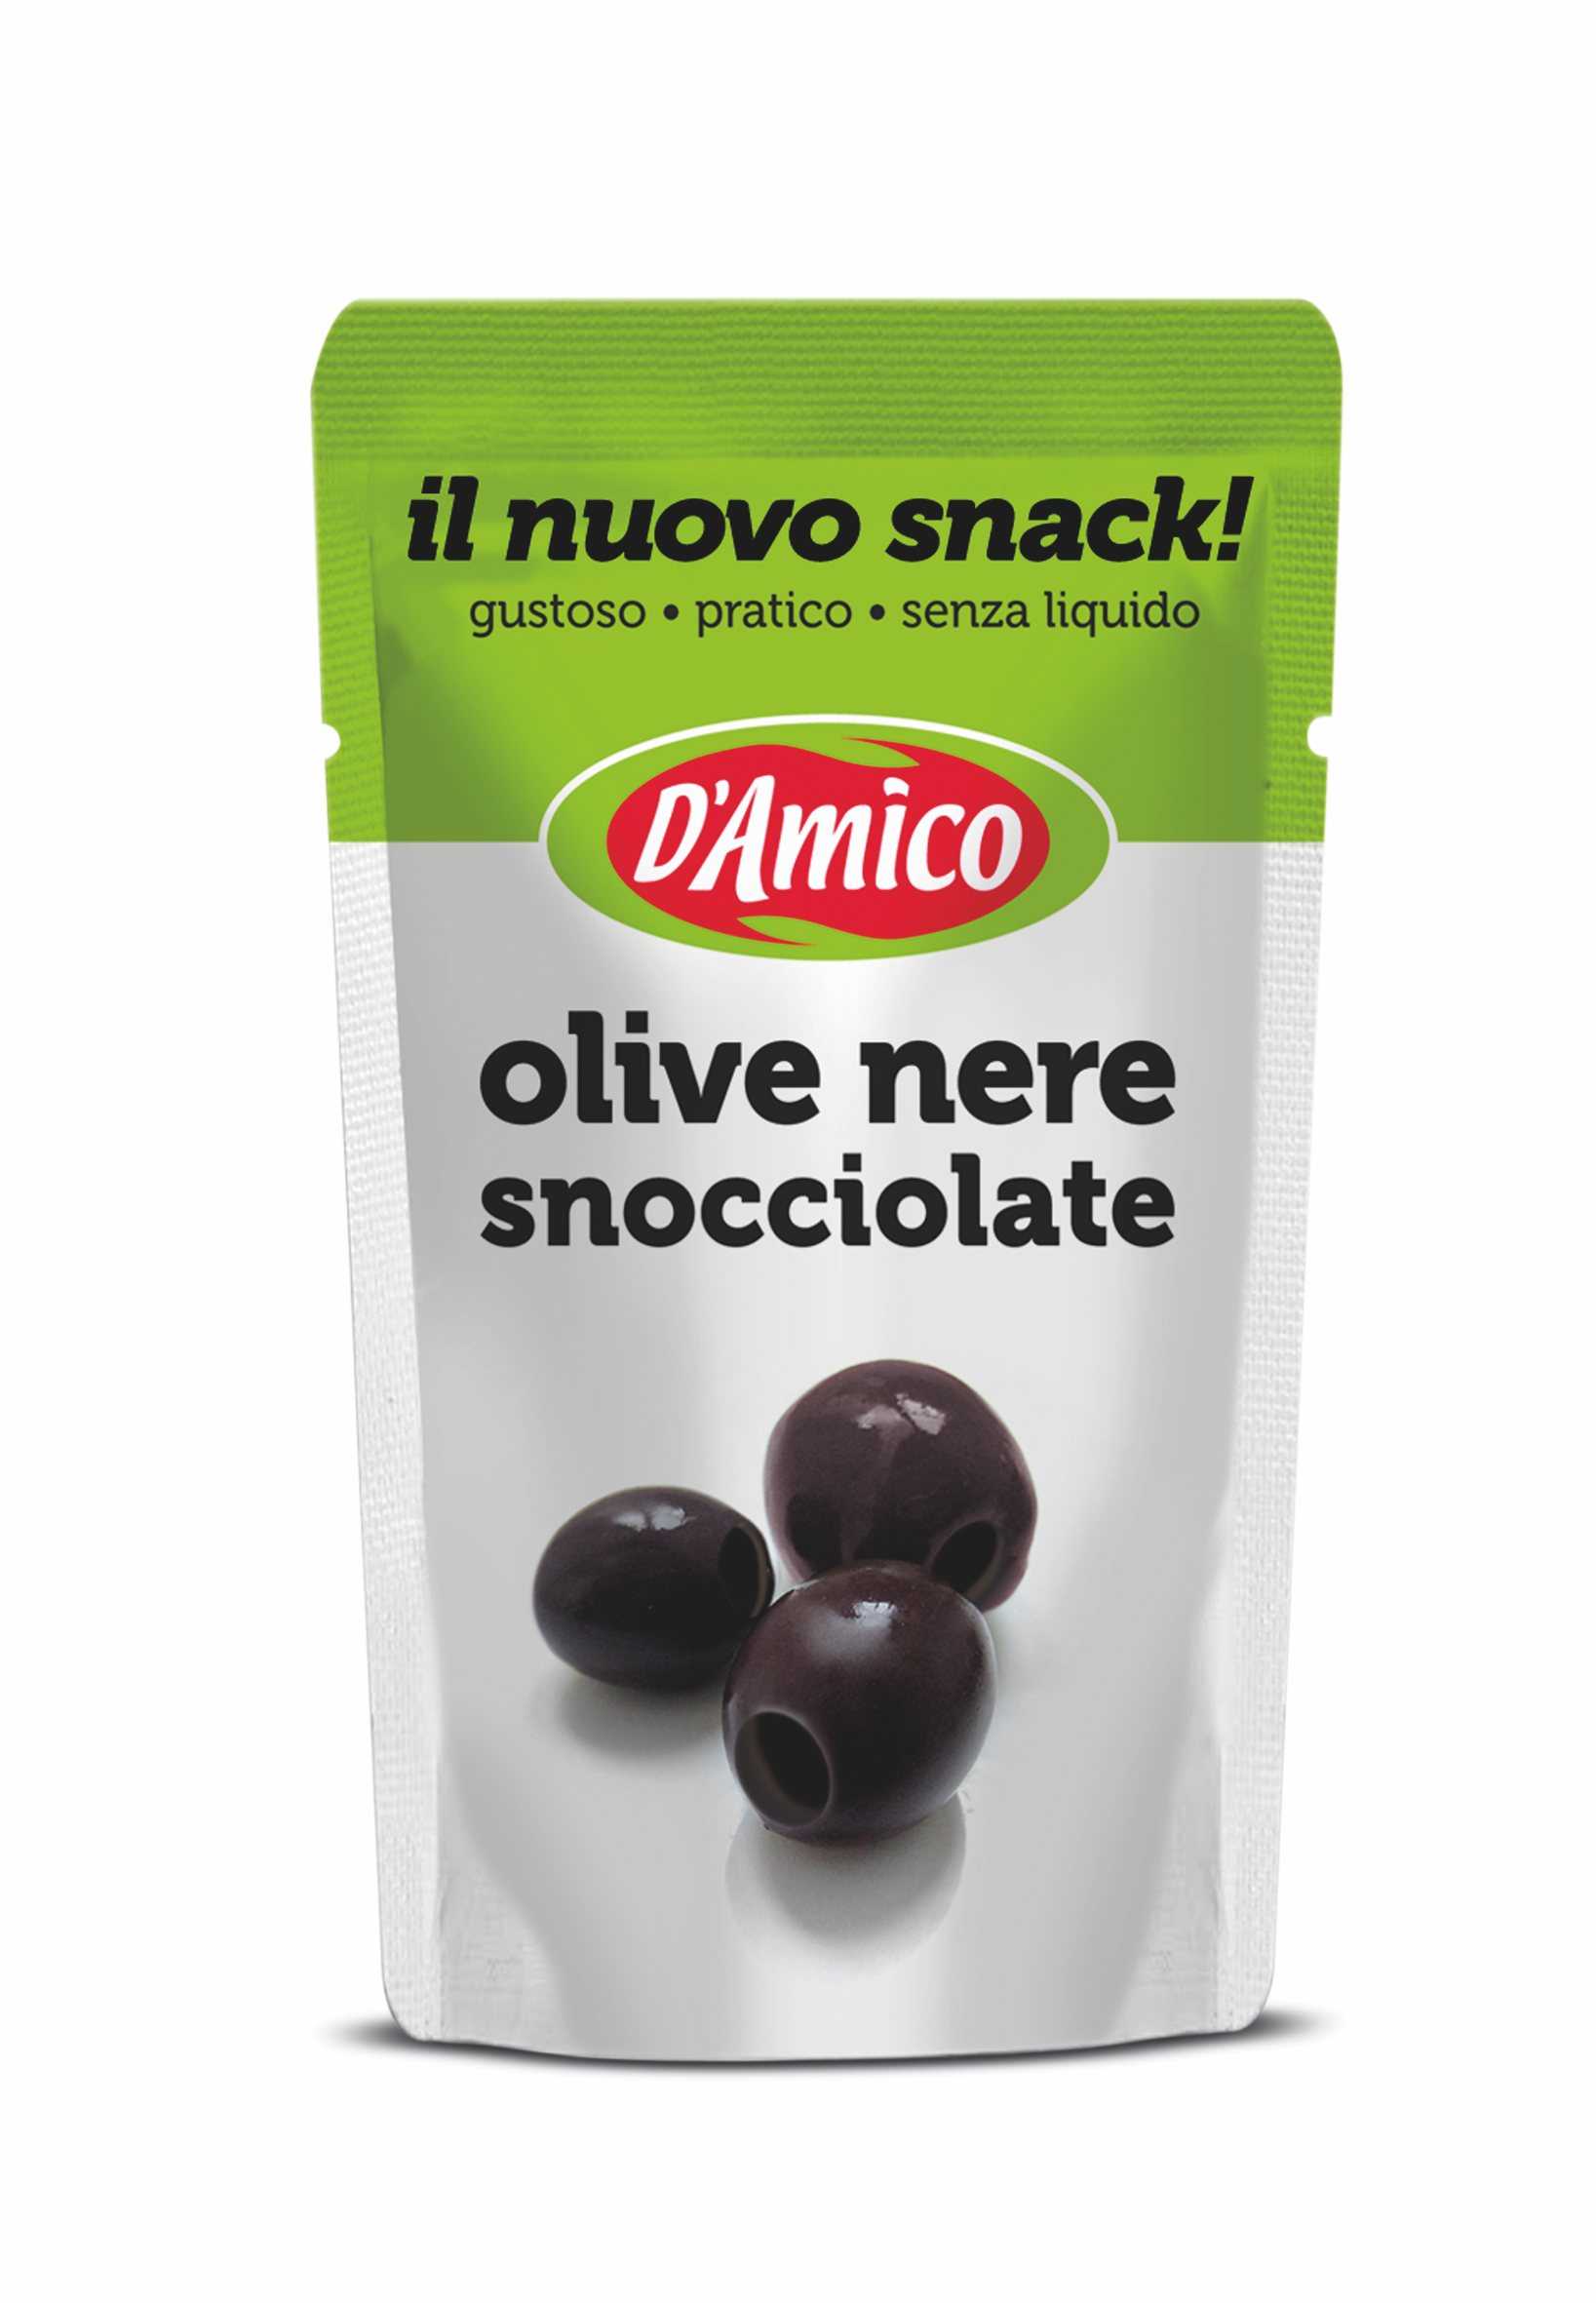 Olive nere snocciolate "Il nuovo snack"